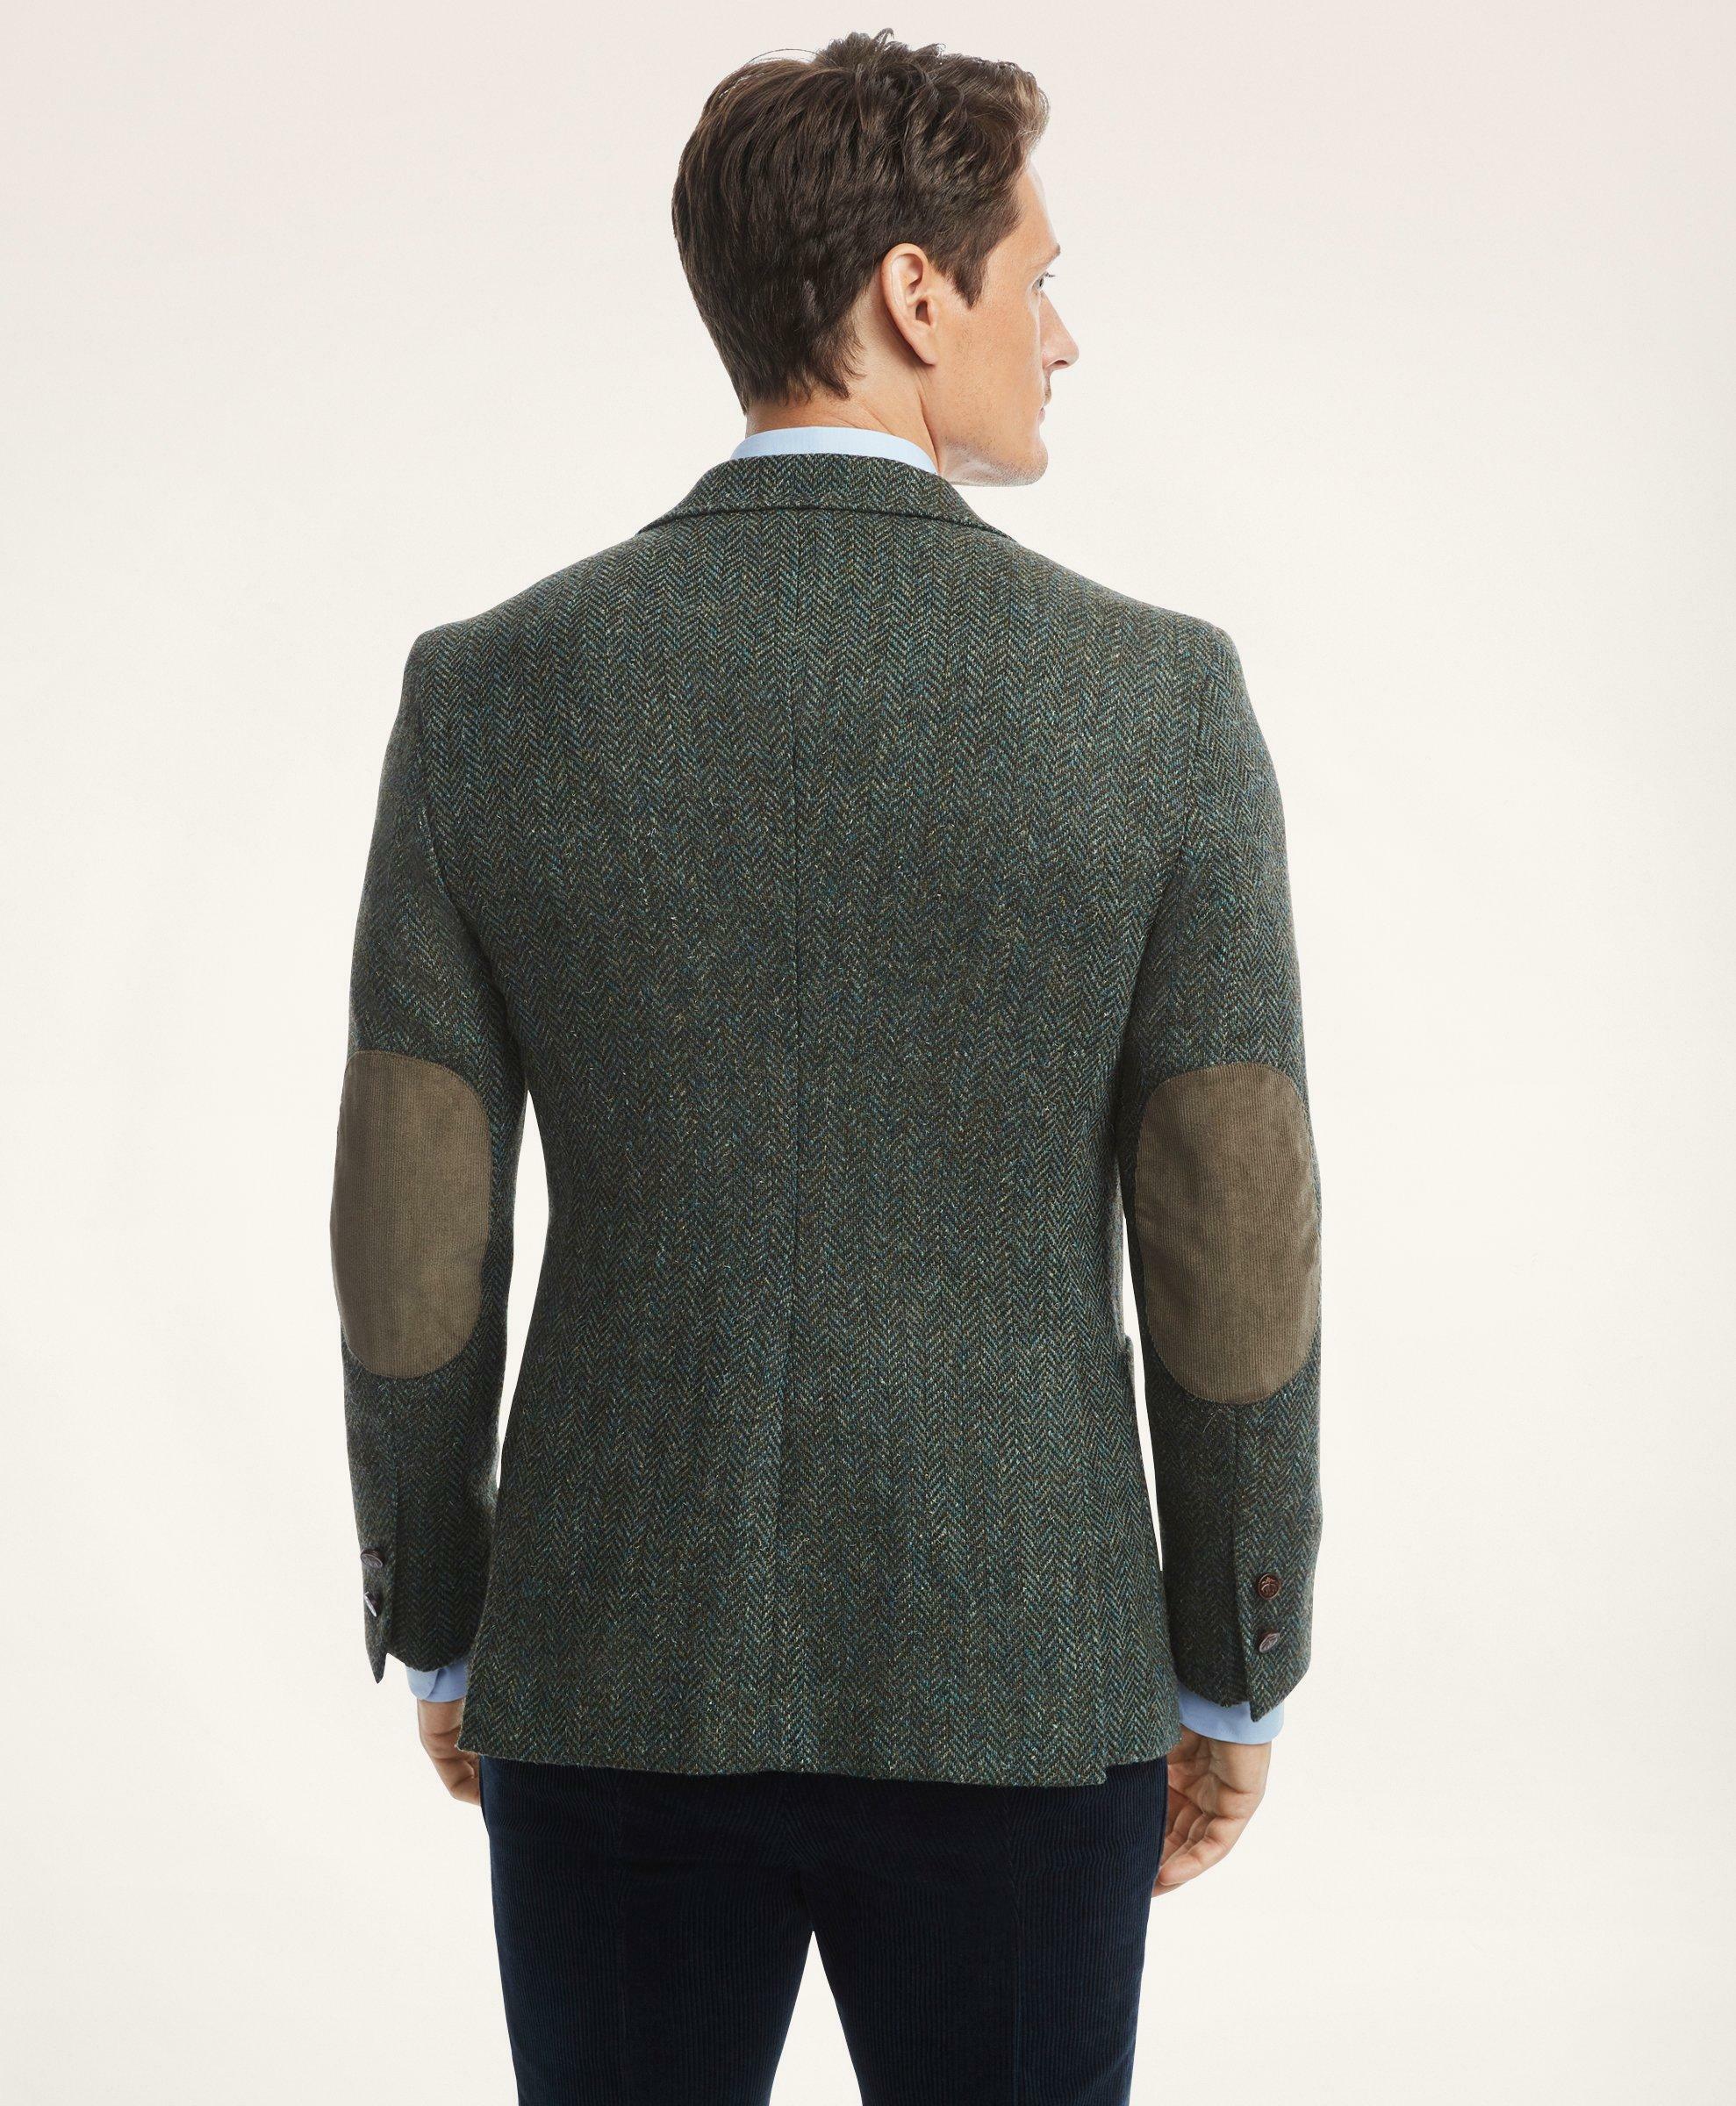 Brooks Brothers Men's Regent Regular-Fit Brushed Wool Herringbone Tweed Sport Coat | Teal